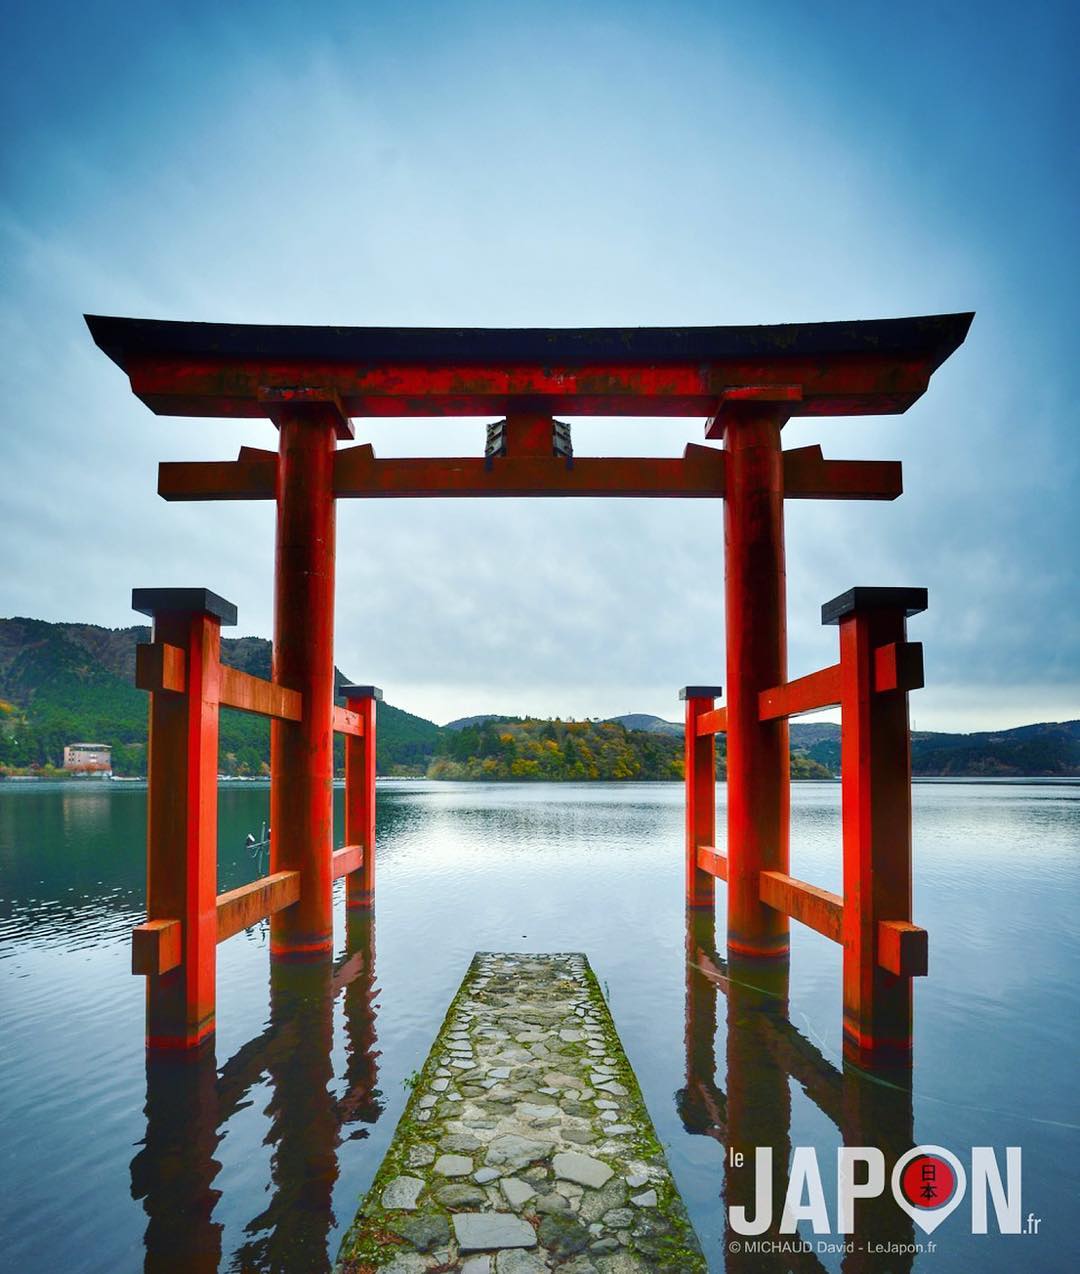 Levé tôt pour faire la photo du torii (portique) du sanctuaire Hakone Jinja ! ⛩⛩⛩ #Hakone #Ashinoko #Japon #Japan